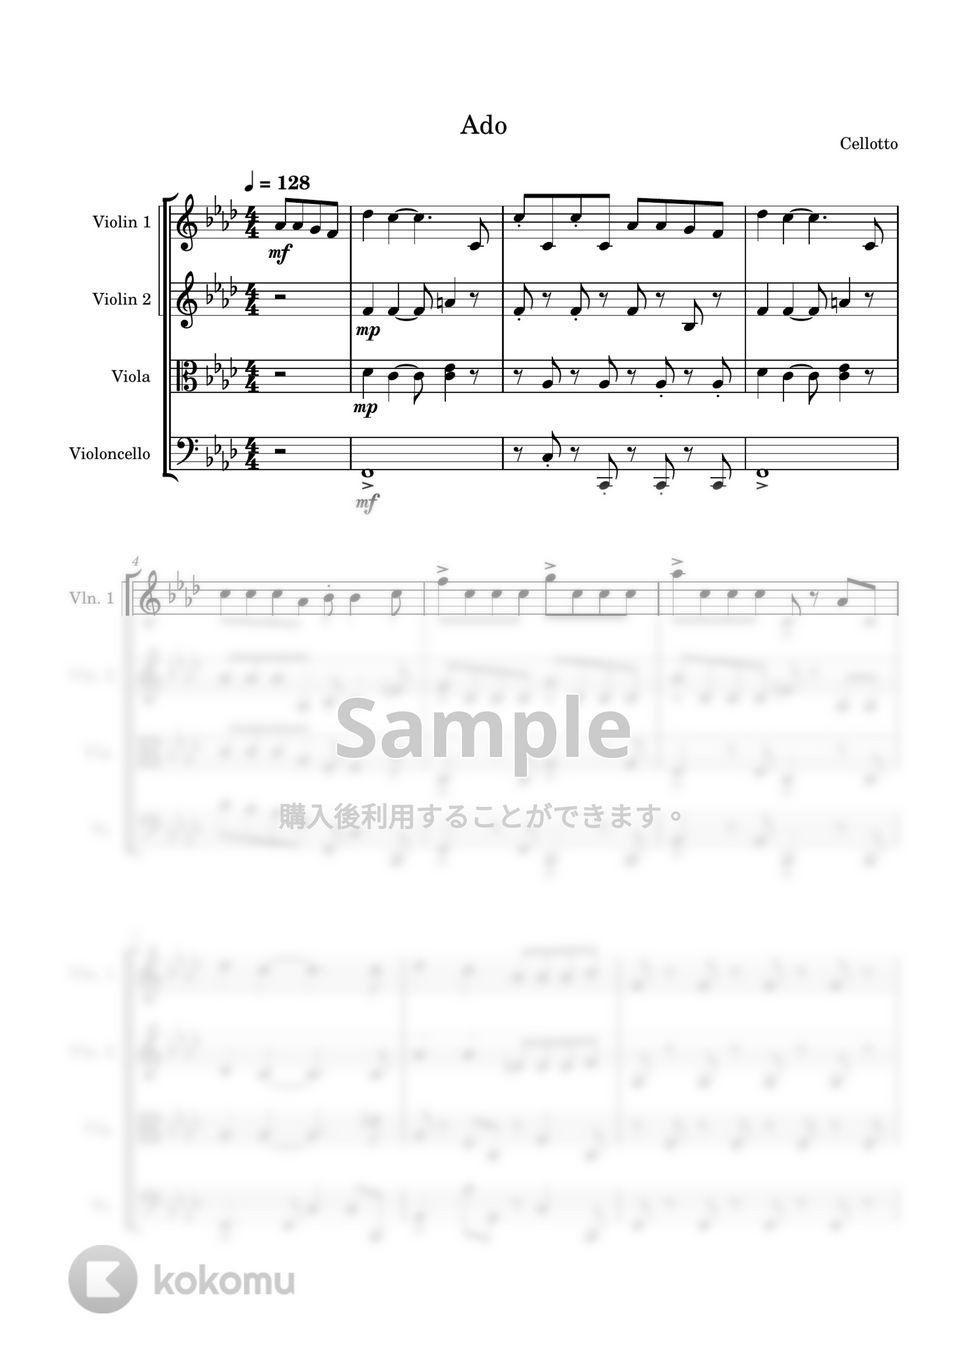 Ado - 踊 (弦楽四重奏) by Cellotto